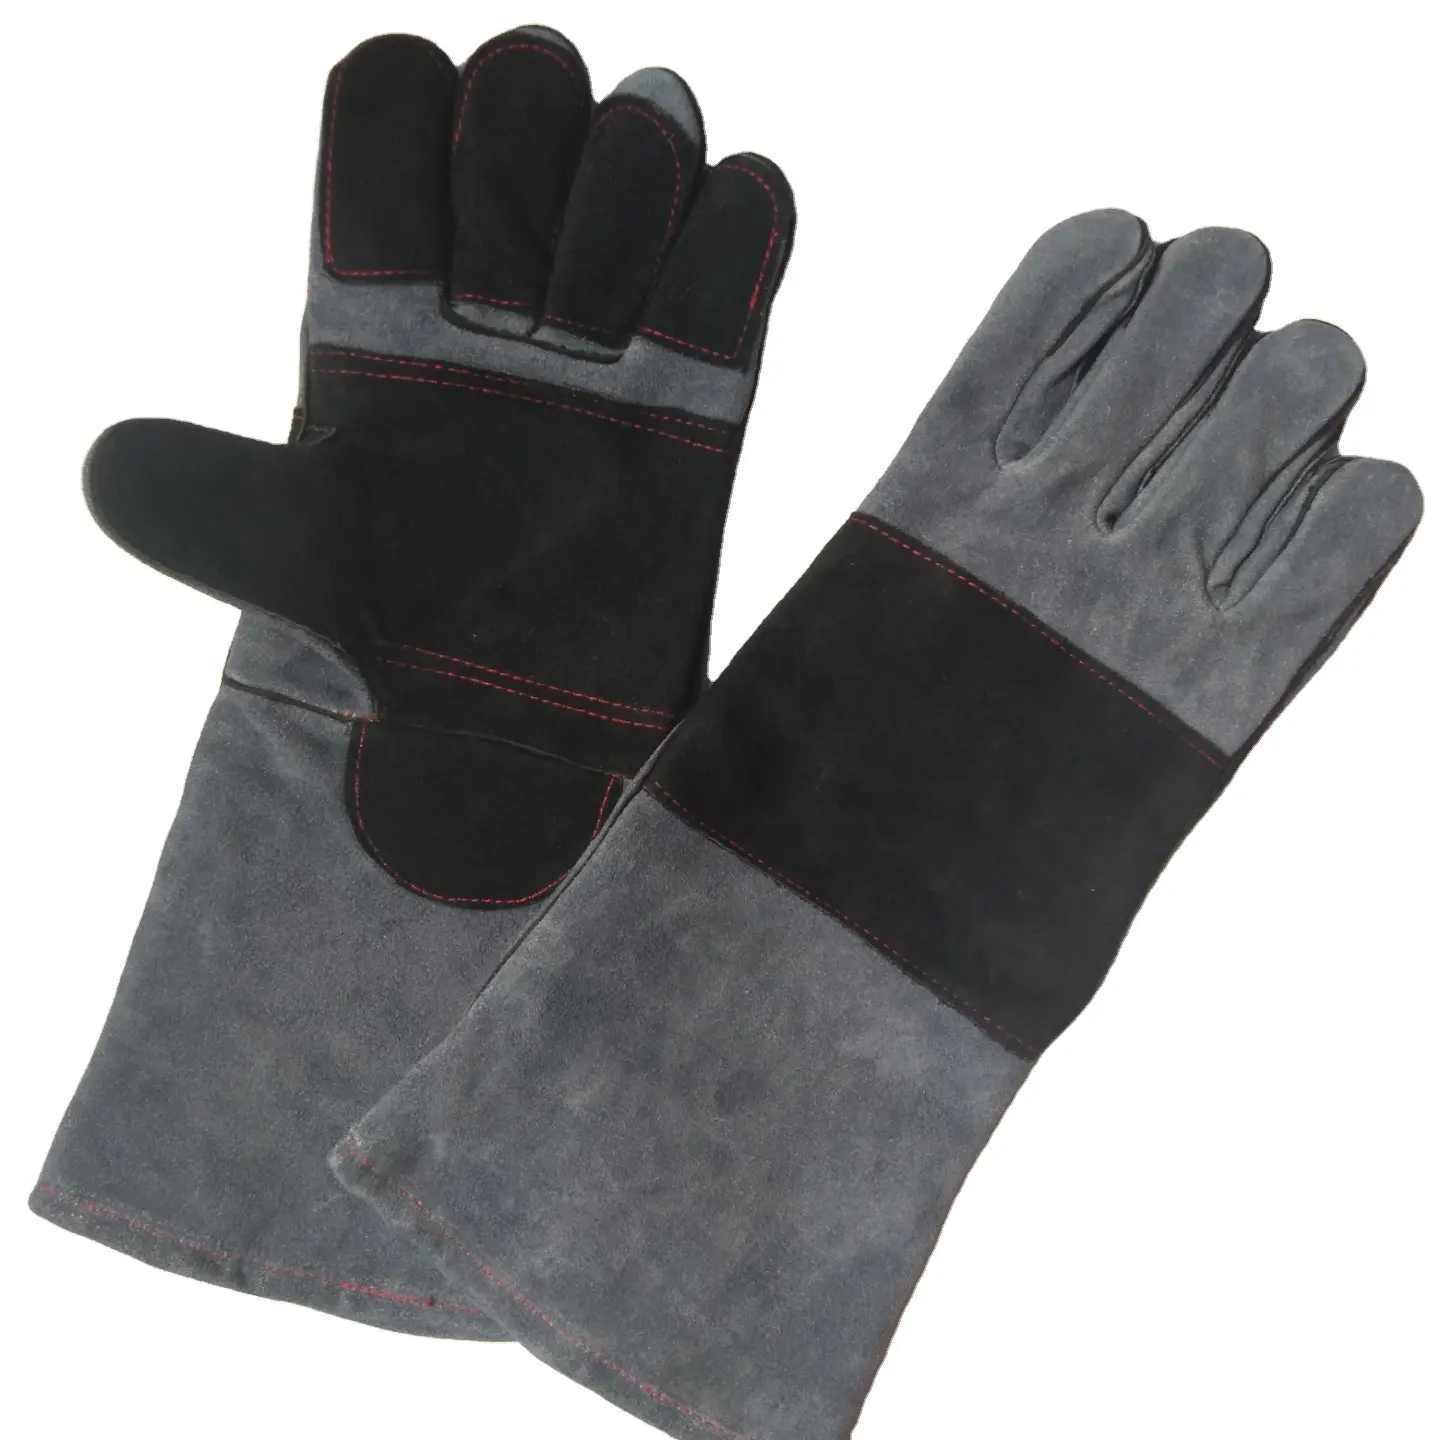 Высококачественные 16-дюймовые сварочные черные и серые кожаные перчатки, длинные хлопчатобумажные перчатки для барбекю